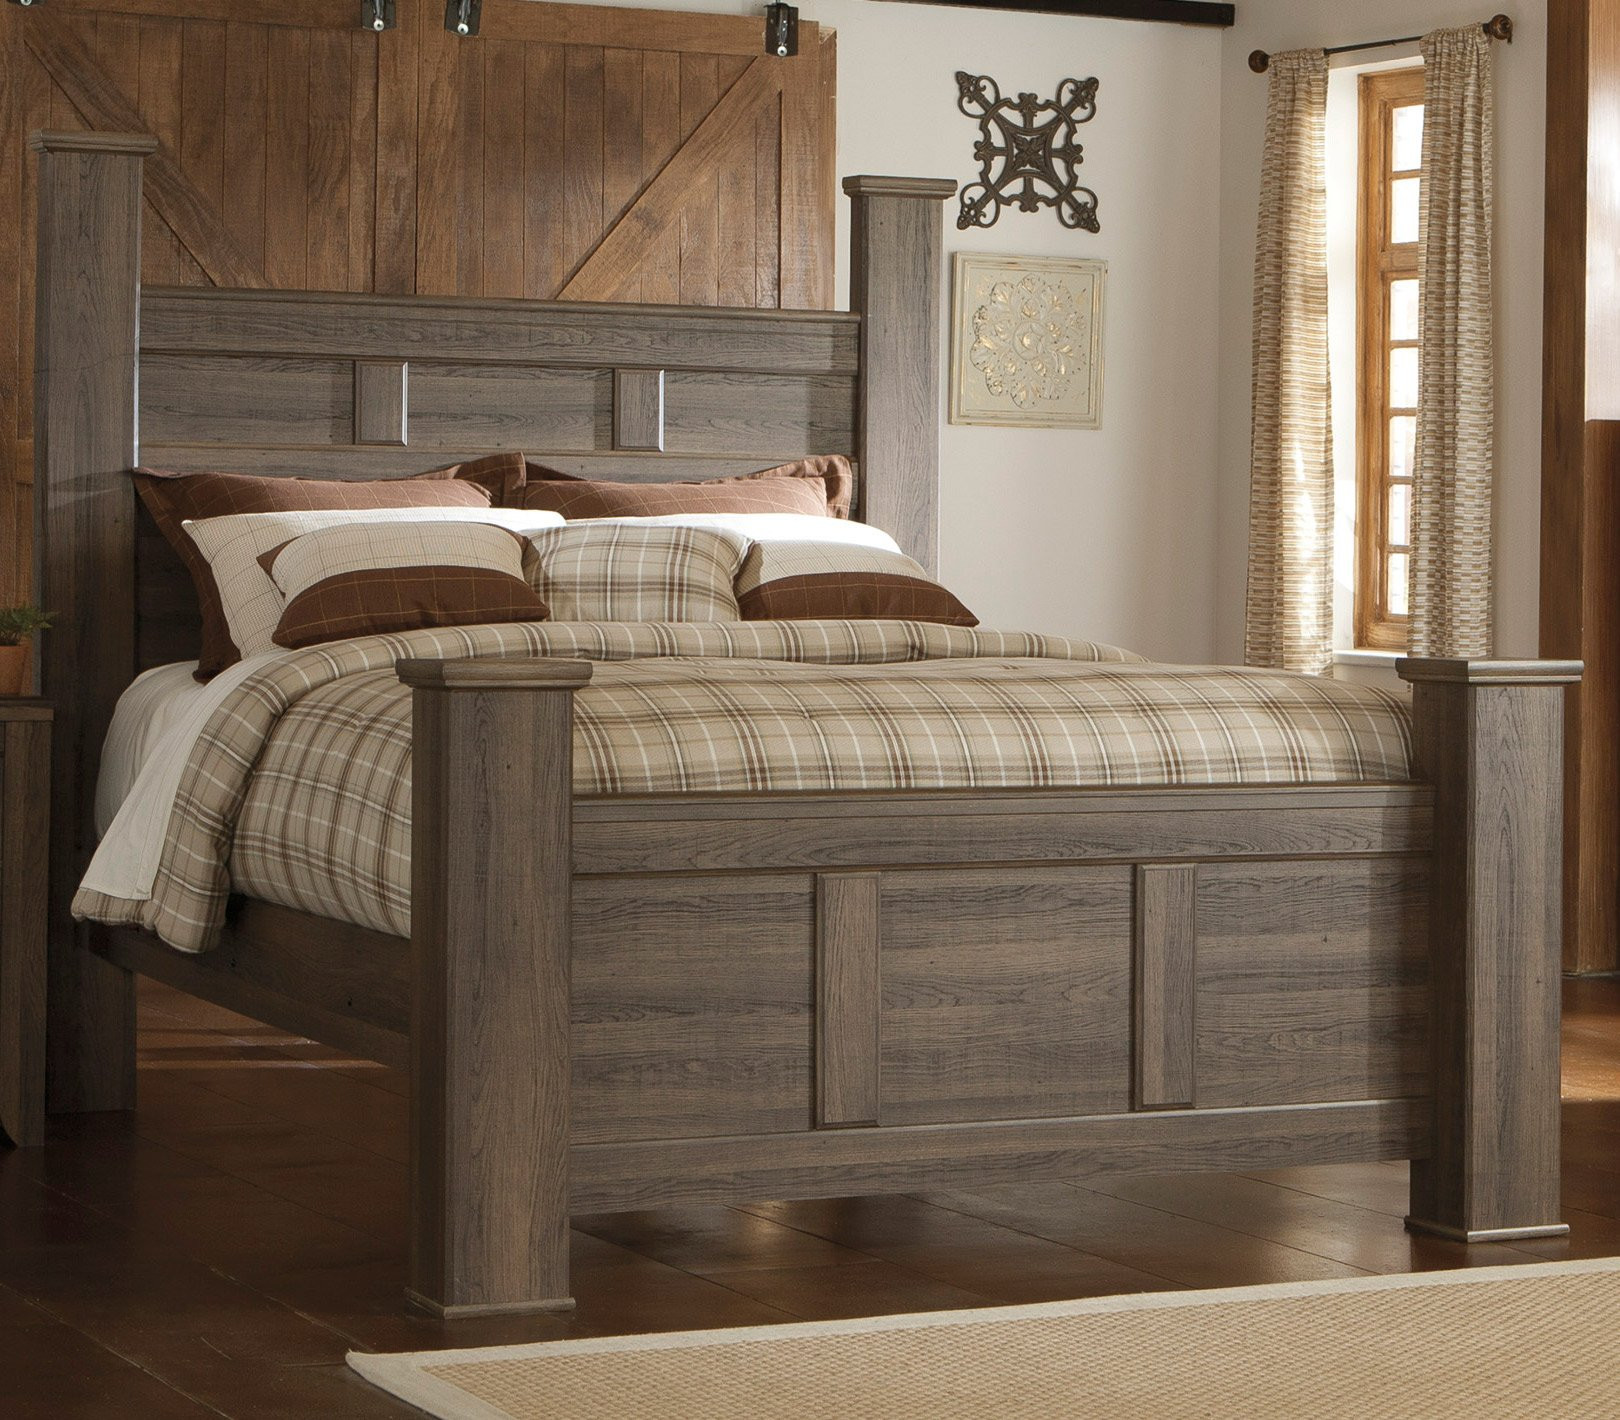 Rustic Bedroom Furniture Sets
 Driftwood Rustic Modern 6 Piece Queen Bedroom Set